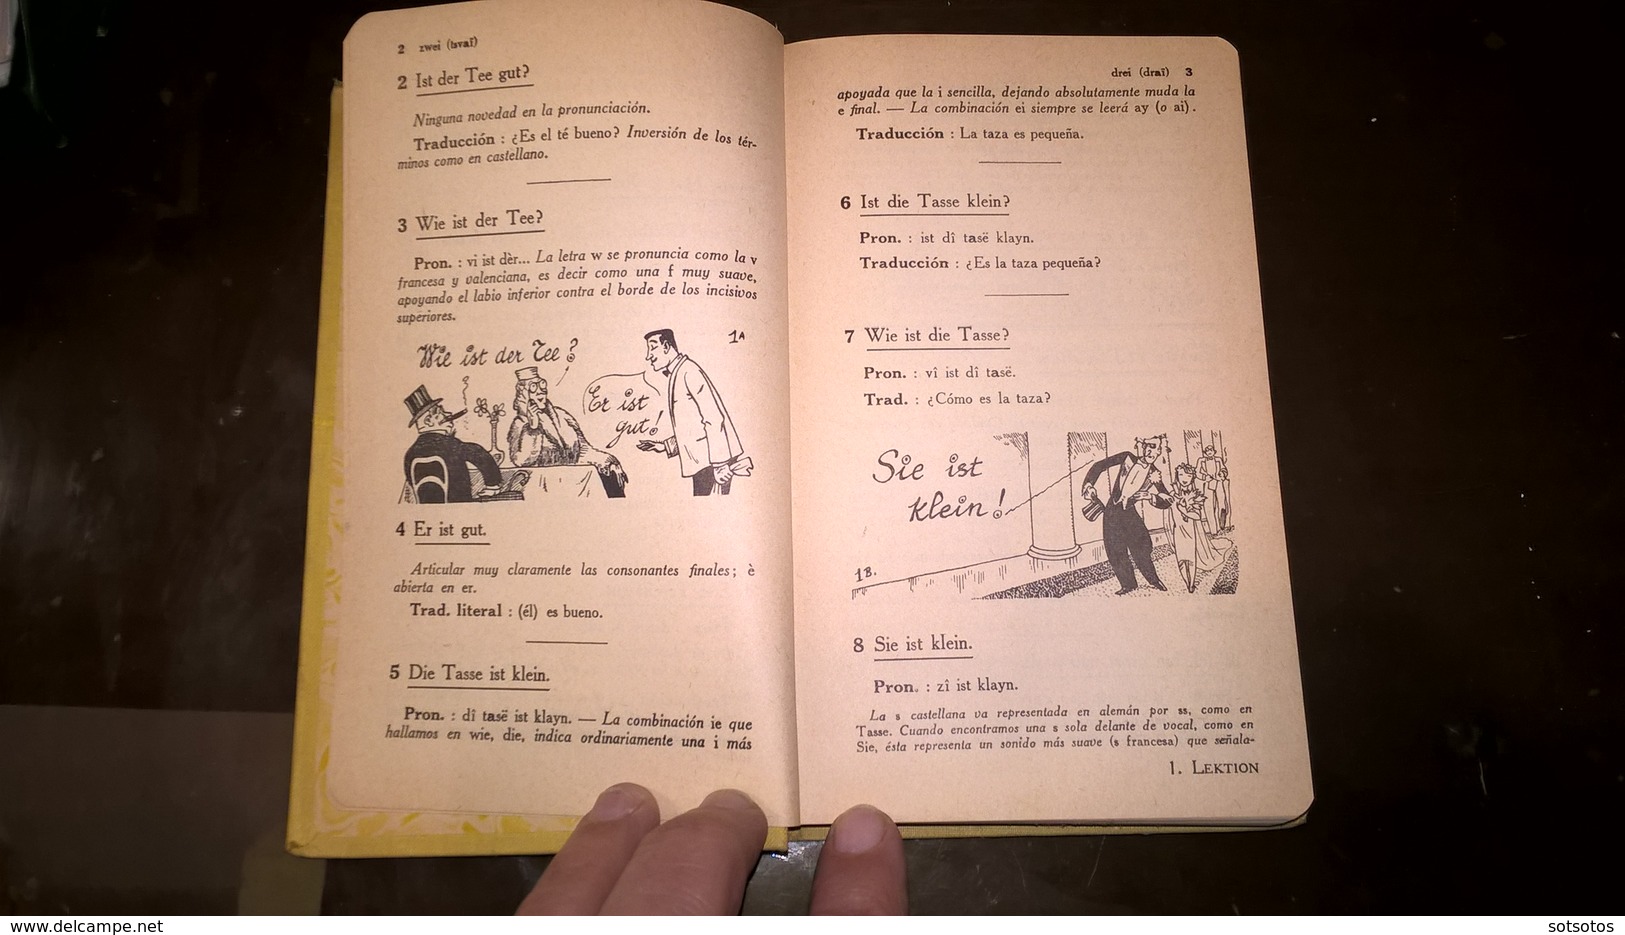 EL ALEMAN Sin ESFUERZO Por A. CHEREL - METODO DIARIO ASSIMIL - PARIS (1959) - 376 Pages (11,50x18 Cent) - IN VERY GOOD - Language Study